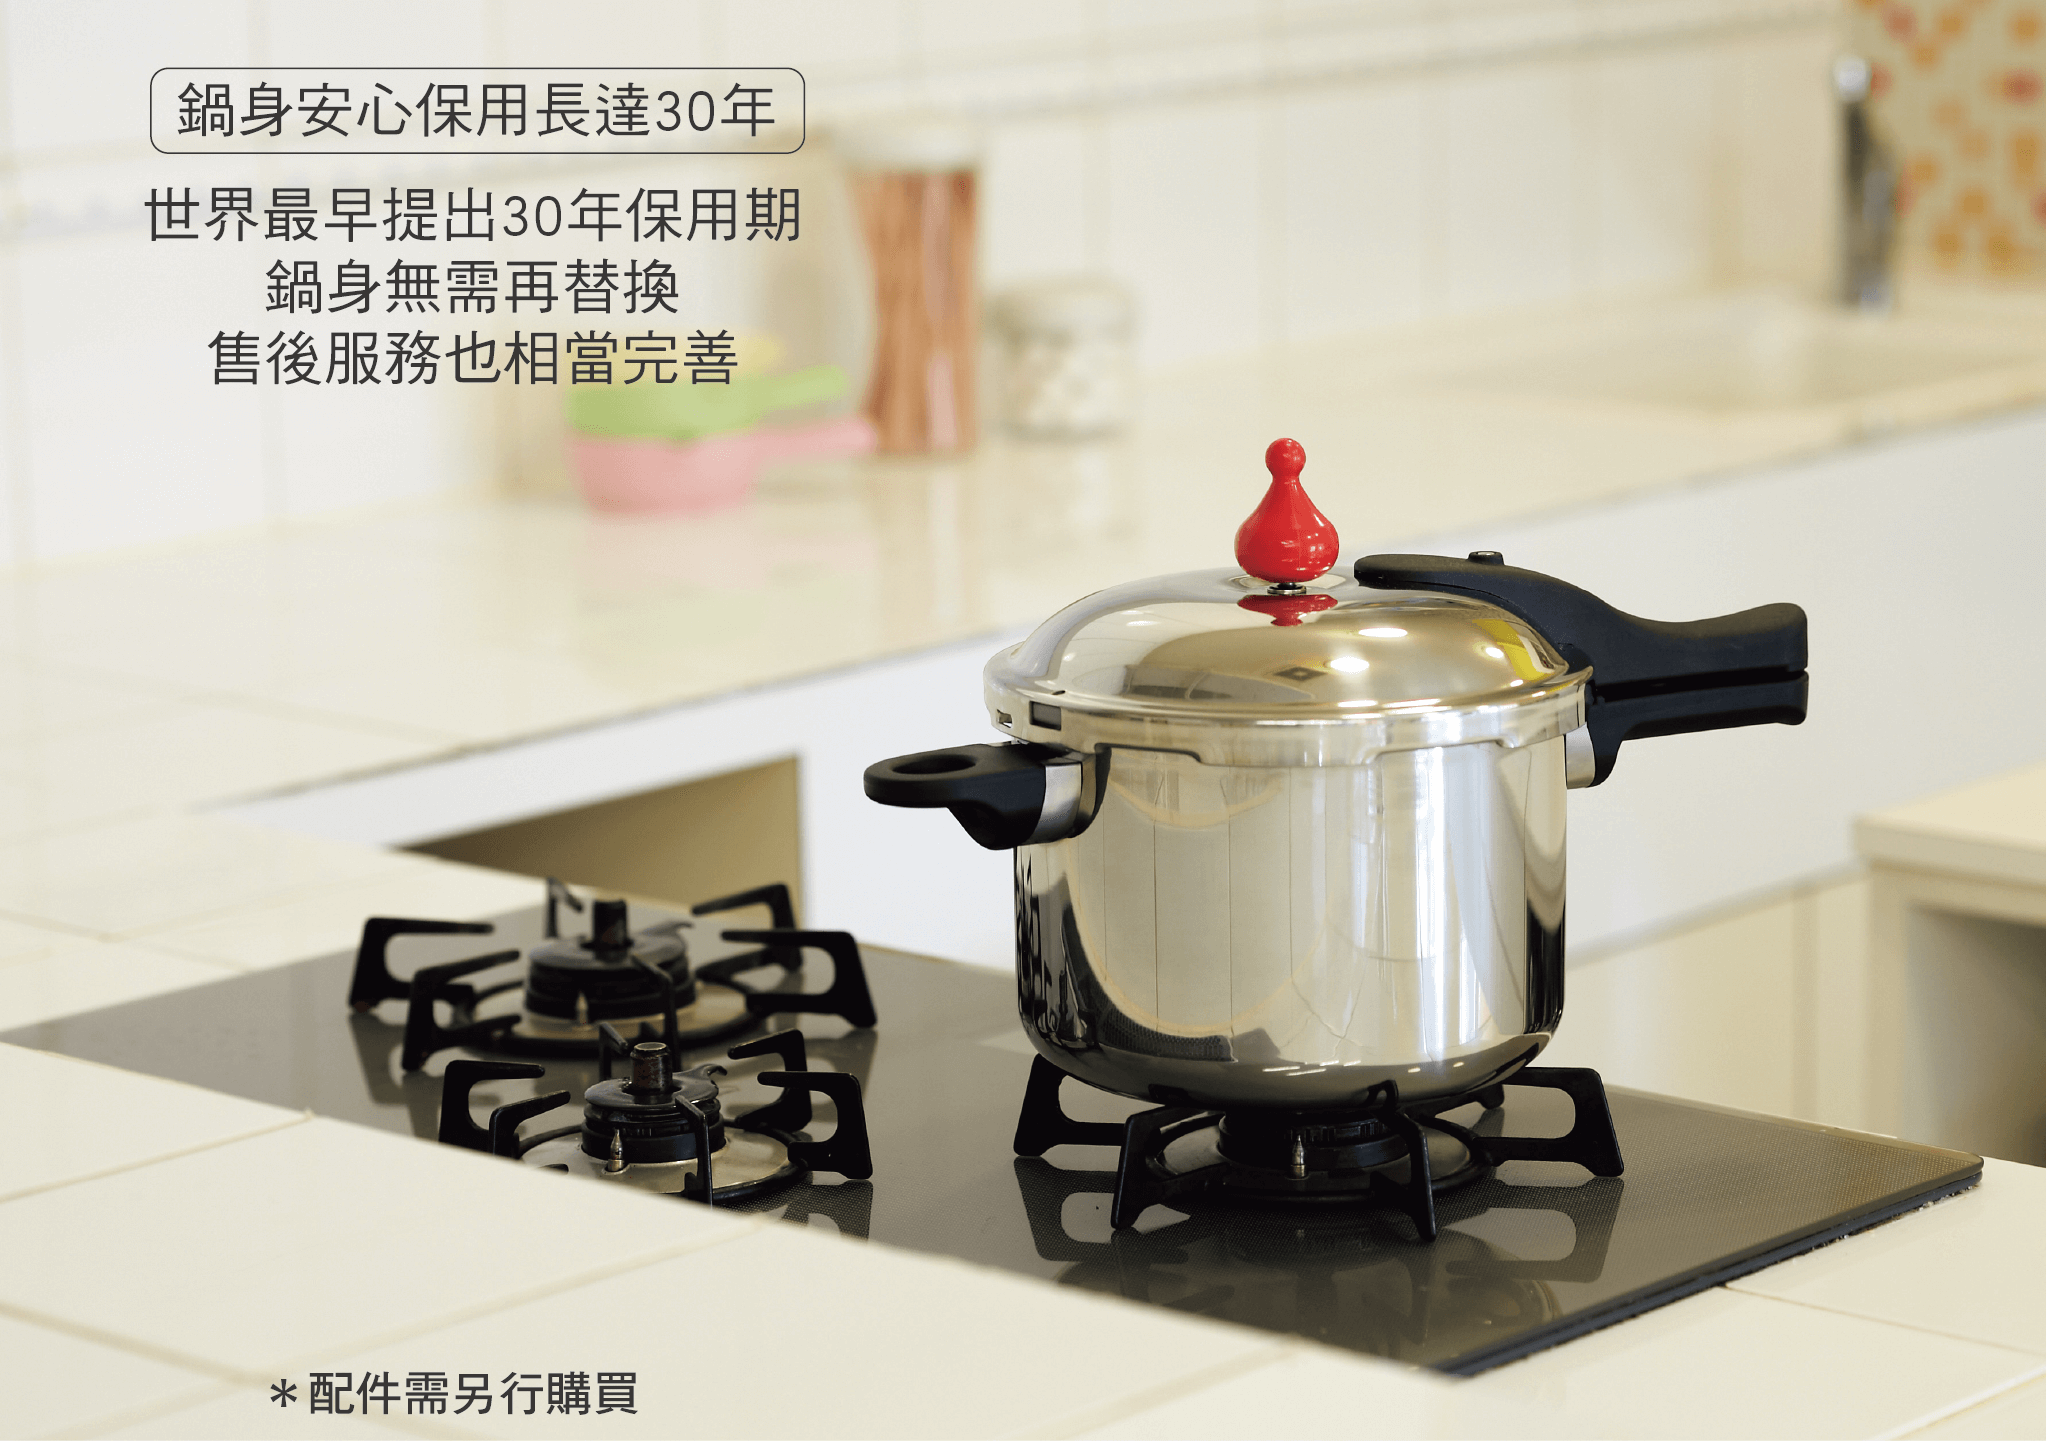 零秒活力鍋,日本製壓力鍋,最高世界等級料理氣壓,悶燒鍋,不鏽鋼鍋,日本鍋具